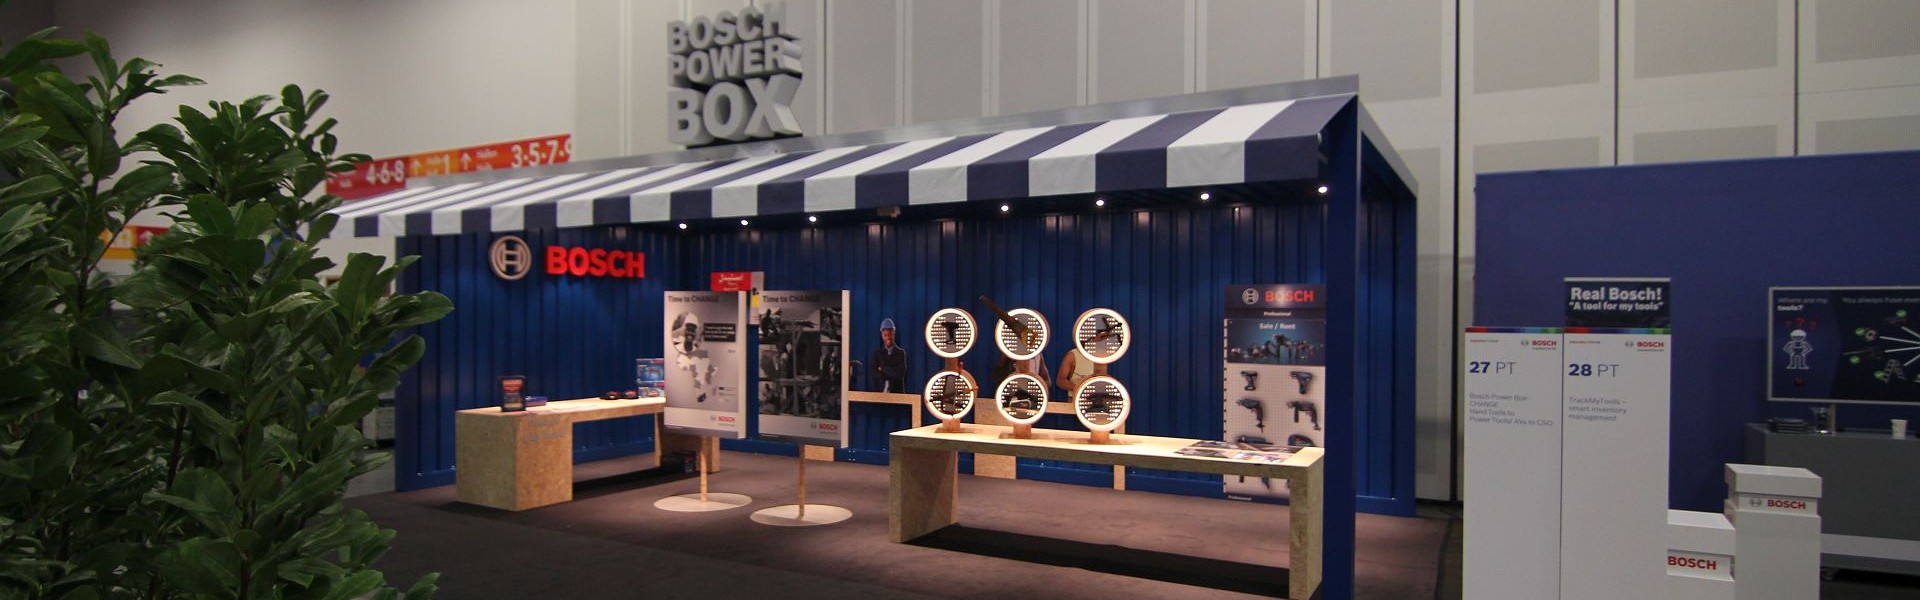 Herstellung und Montage eines Messestandes für Bosch Powertools